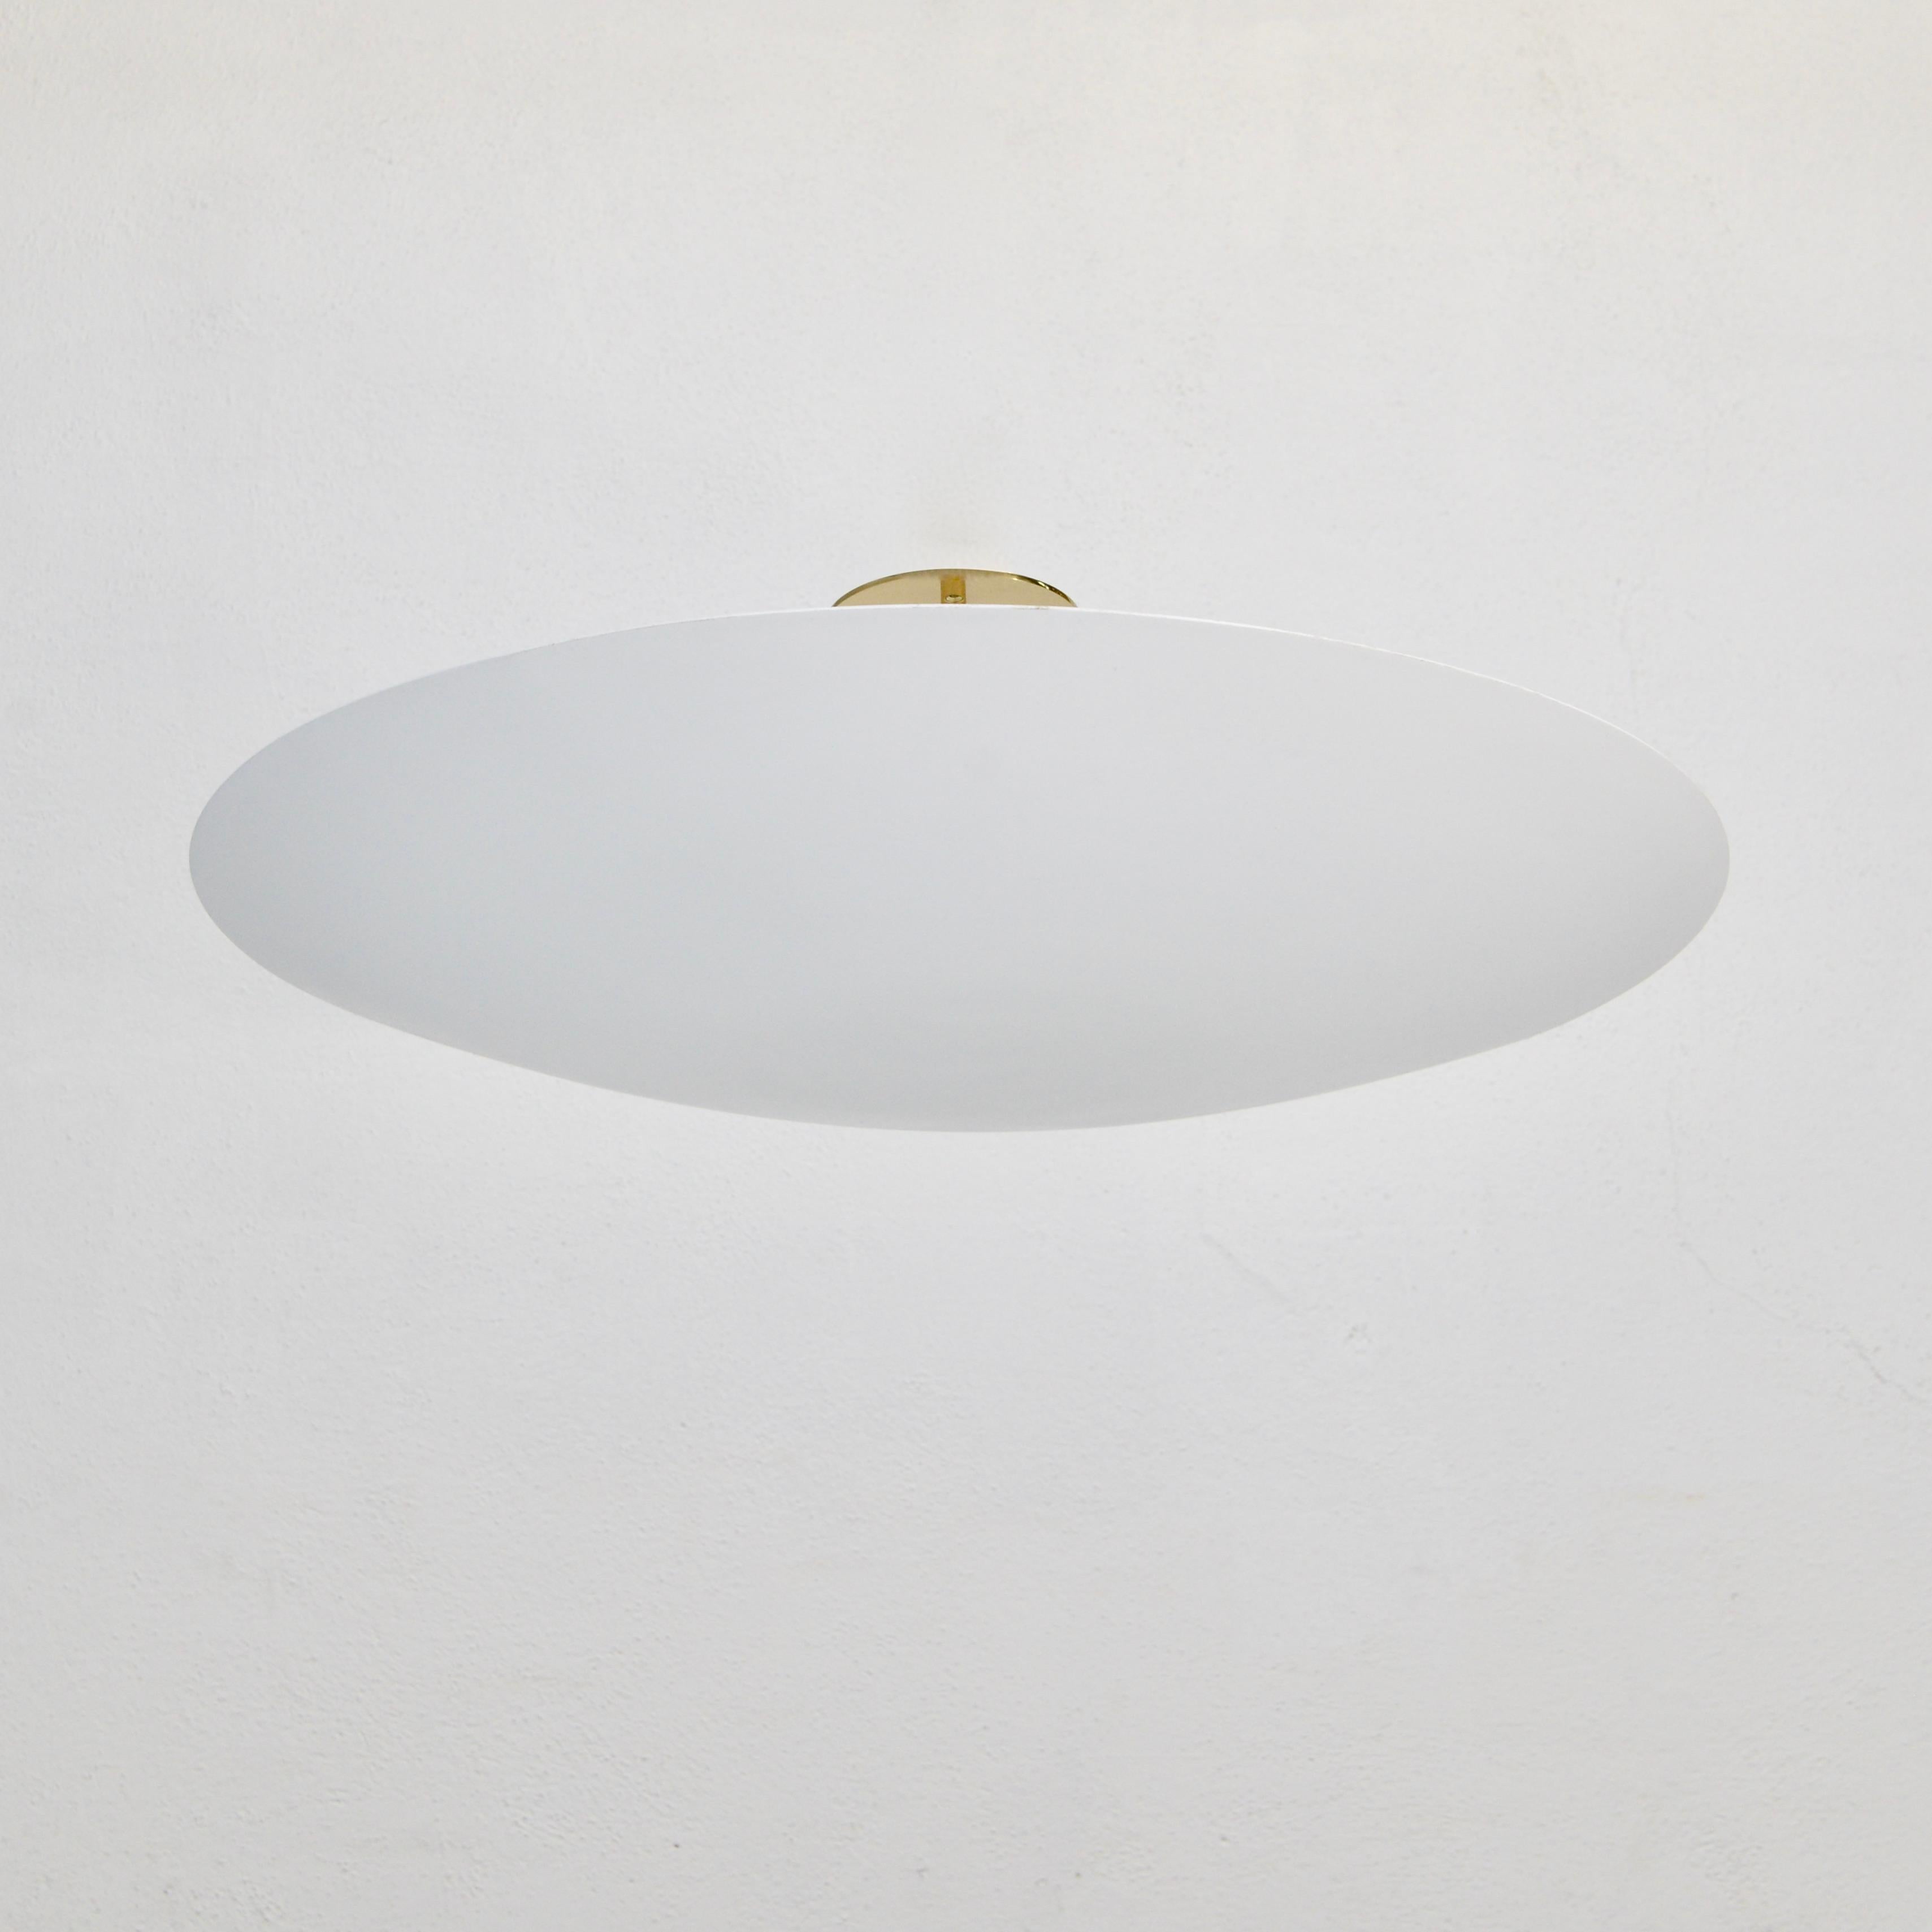 Le luminaire LUdish FWB Flush Mount, qui fait partie de la collection de luminaires contemporains de Lumfardo, est un élégant luminaire encastré en aluminium et laiton peint à la main, de couleur blanc plat et de forme moderne. Fabriqué sur